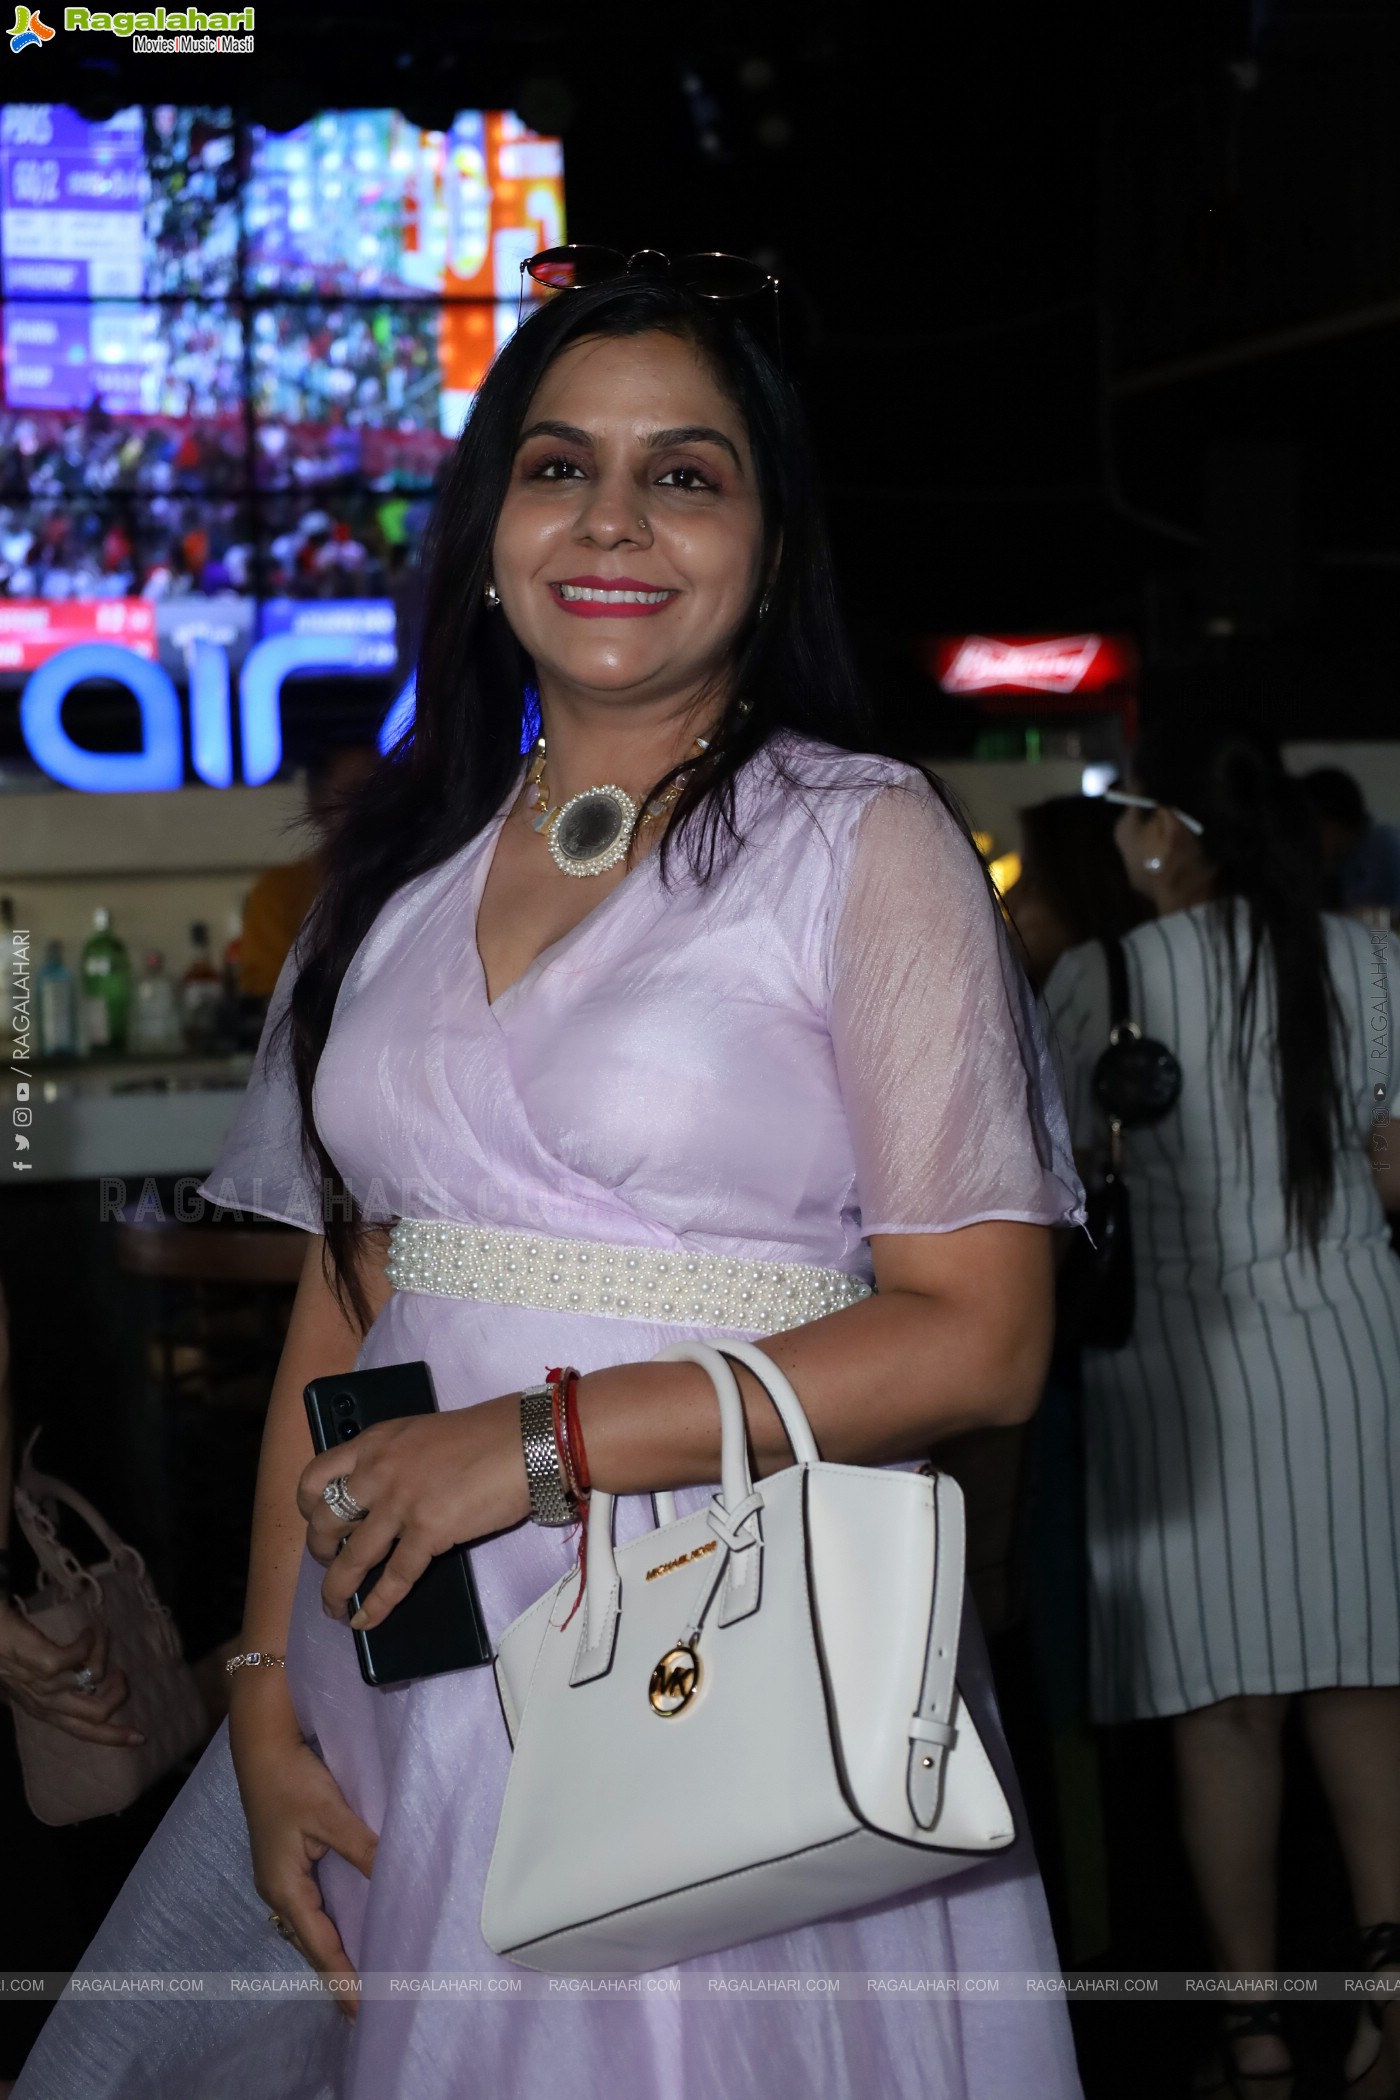 Ananya Simlai Birthday Bash at Airlive Jubilee Hills, Hyderabad